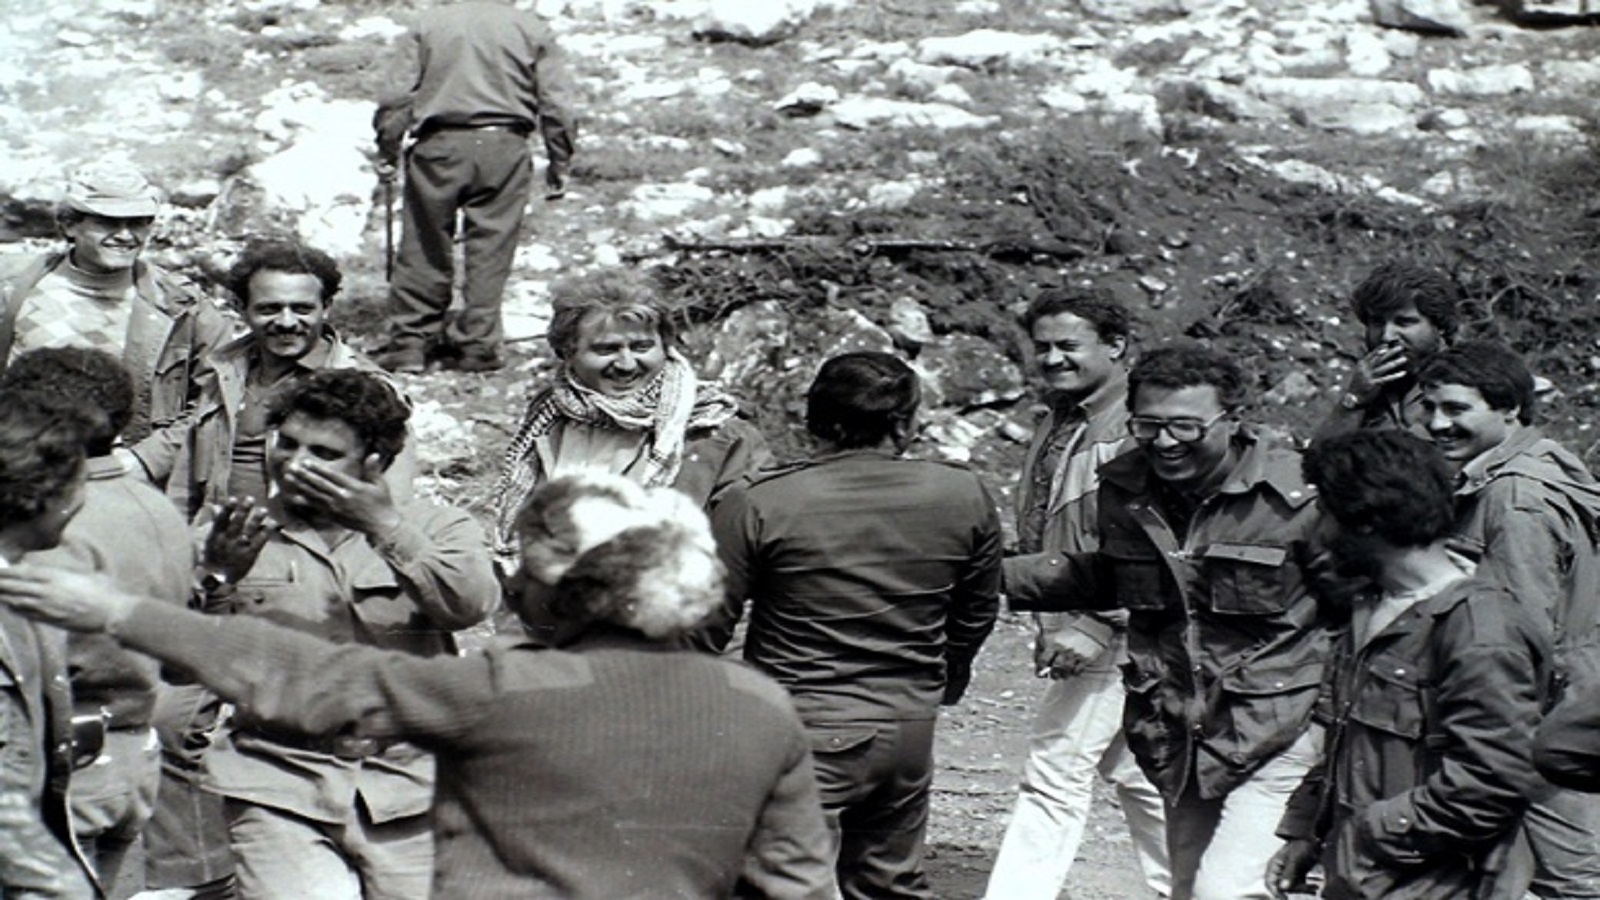 جورج حاوي وفاروق دحروج ورفاقهما في عيون السيمان - جبل لبنان (دياب القرصيفي)